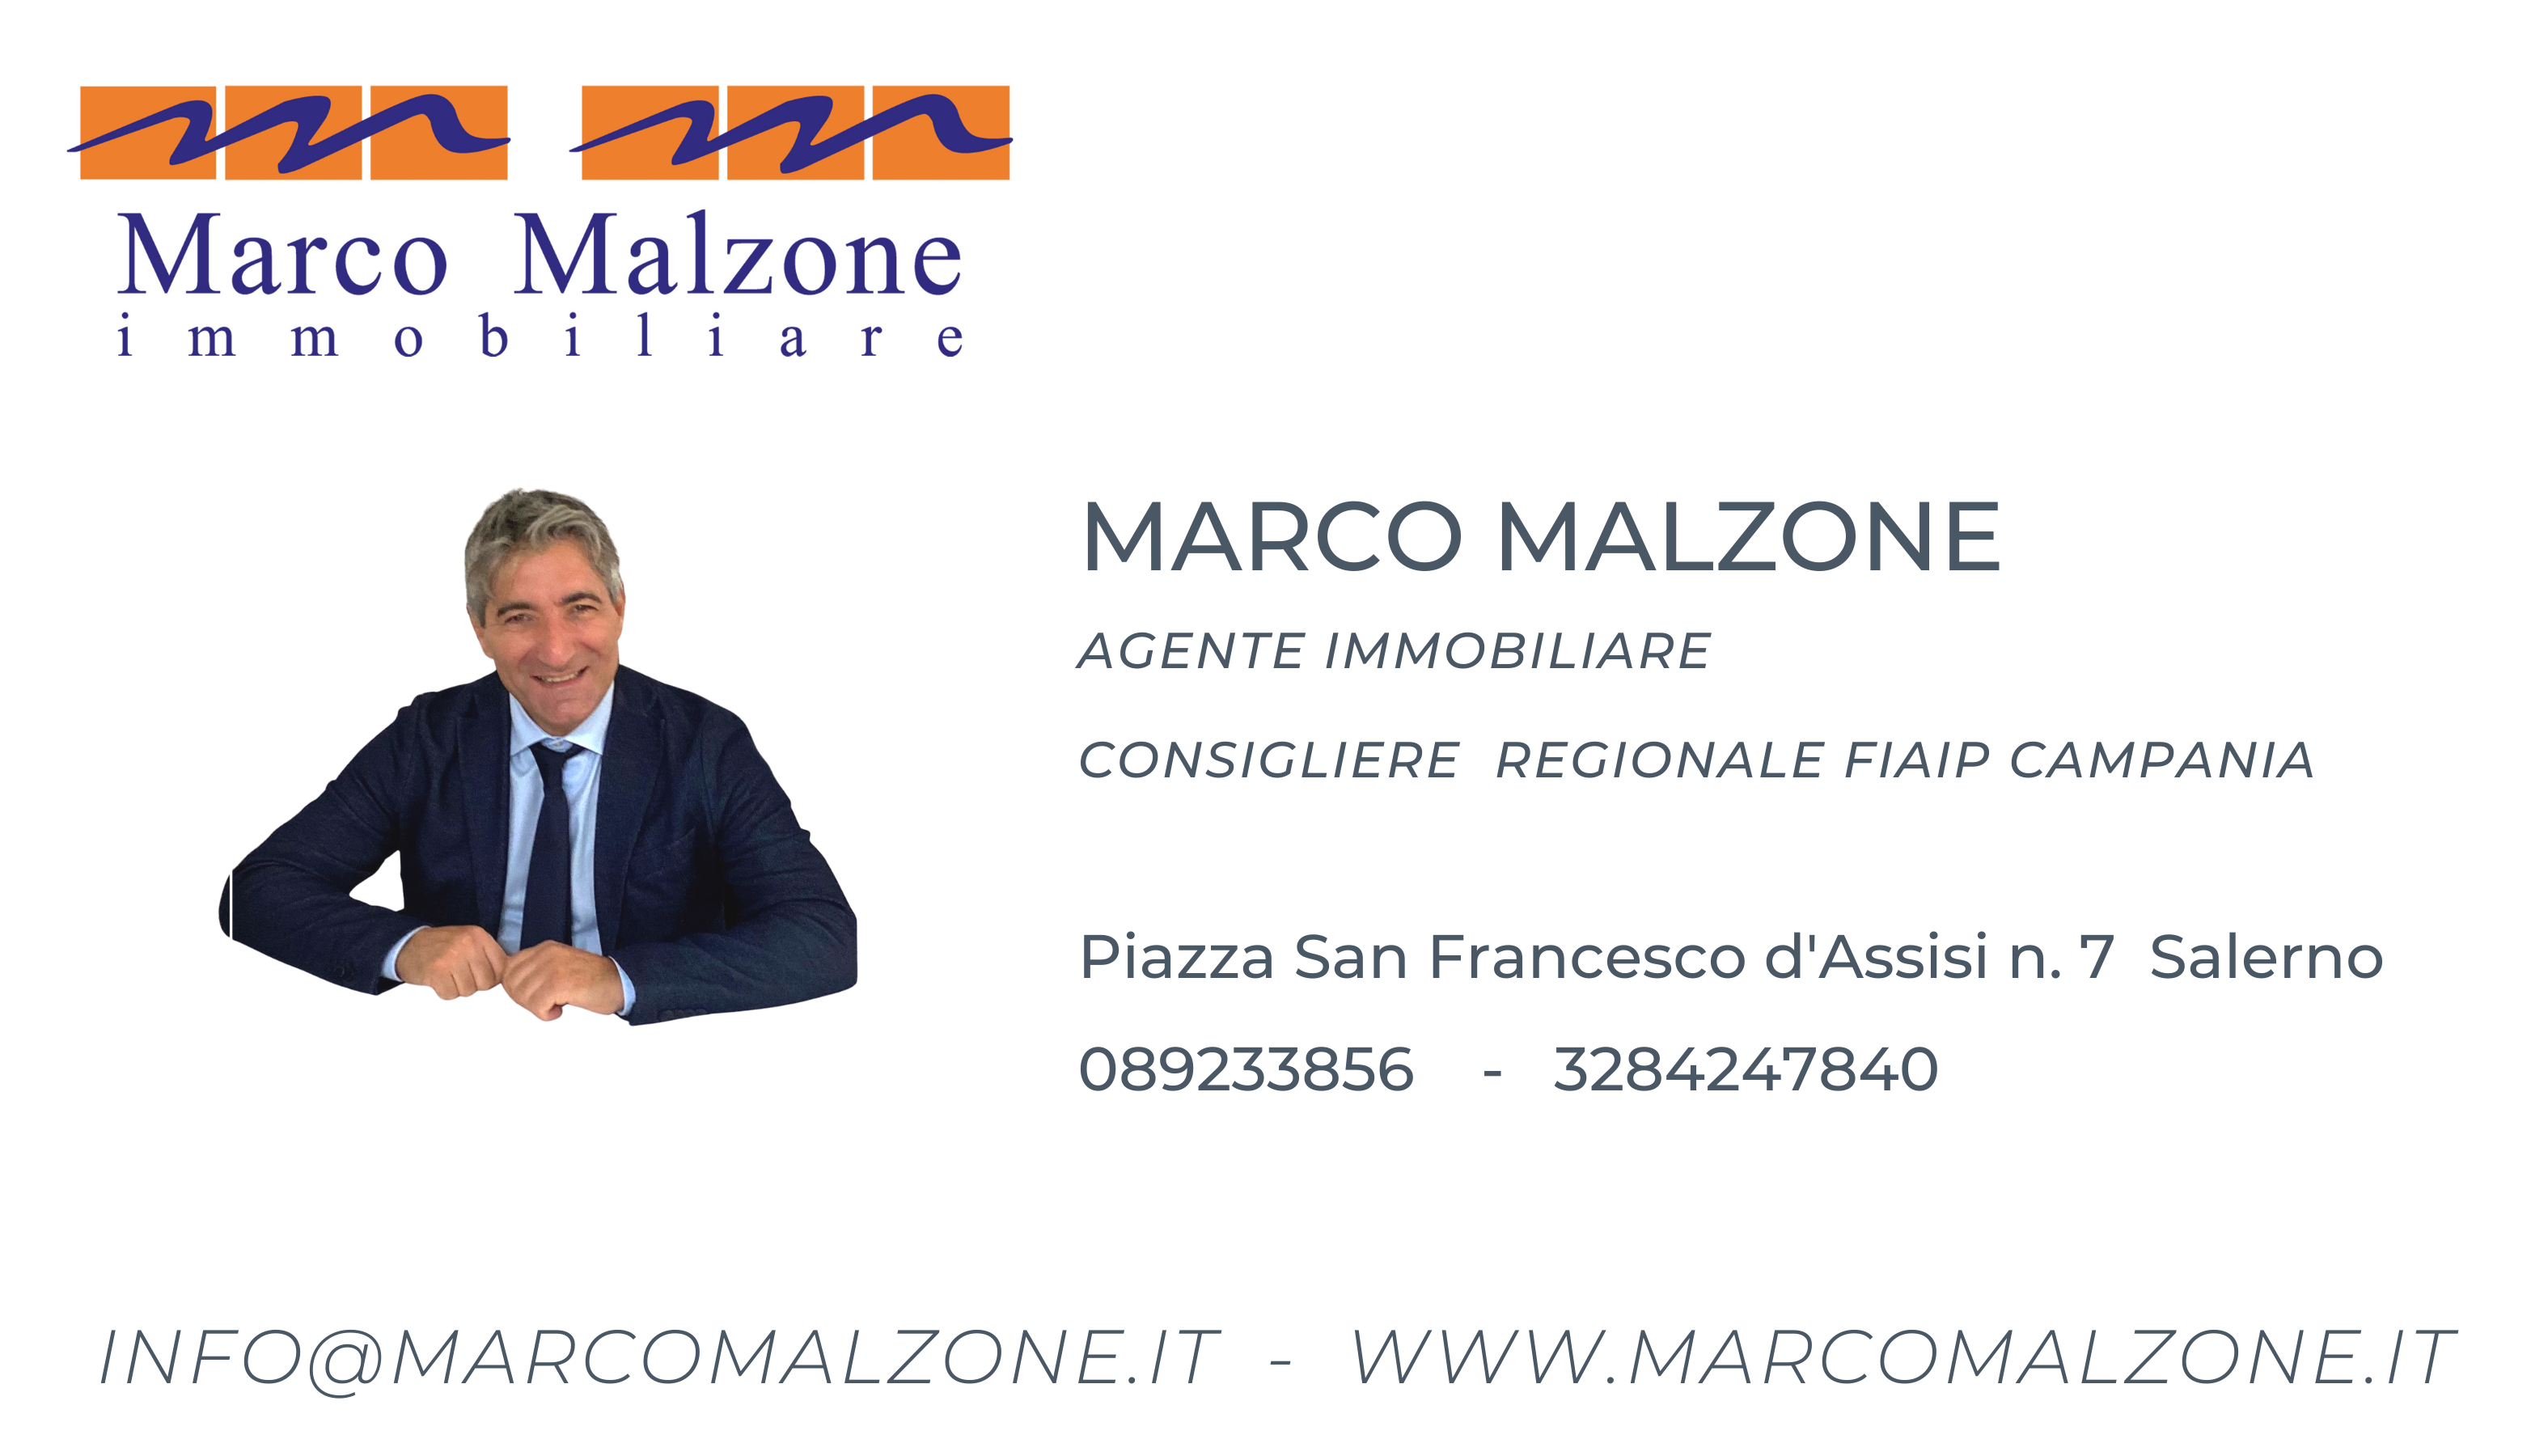 Marco Malzone immobiliare